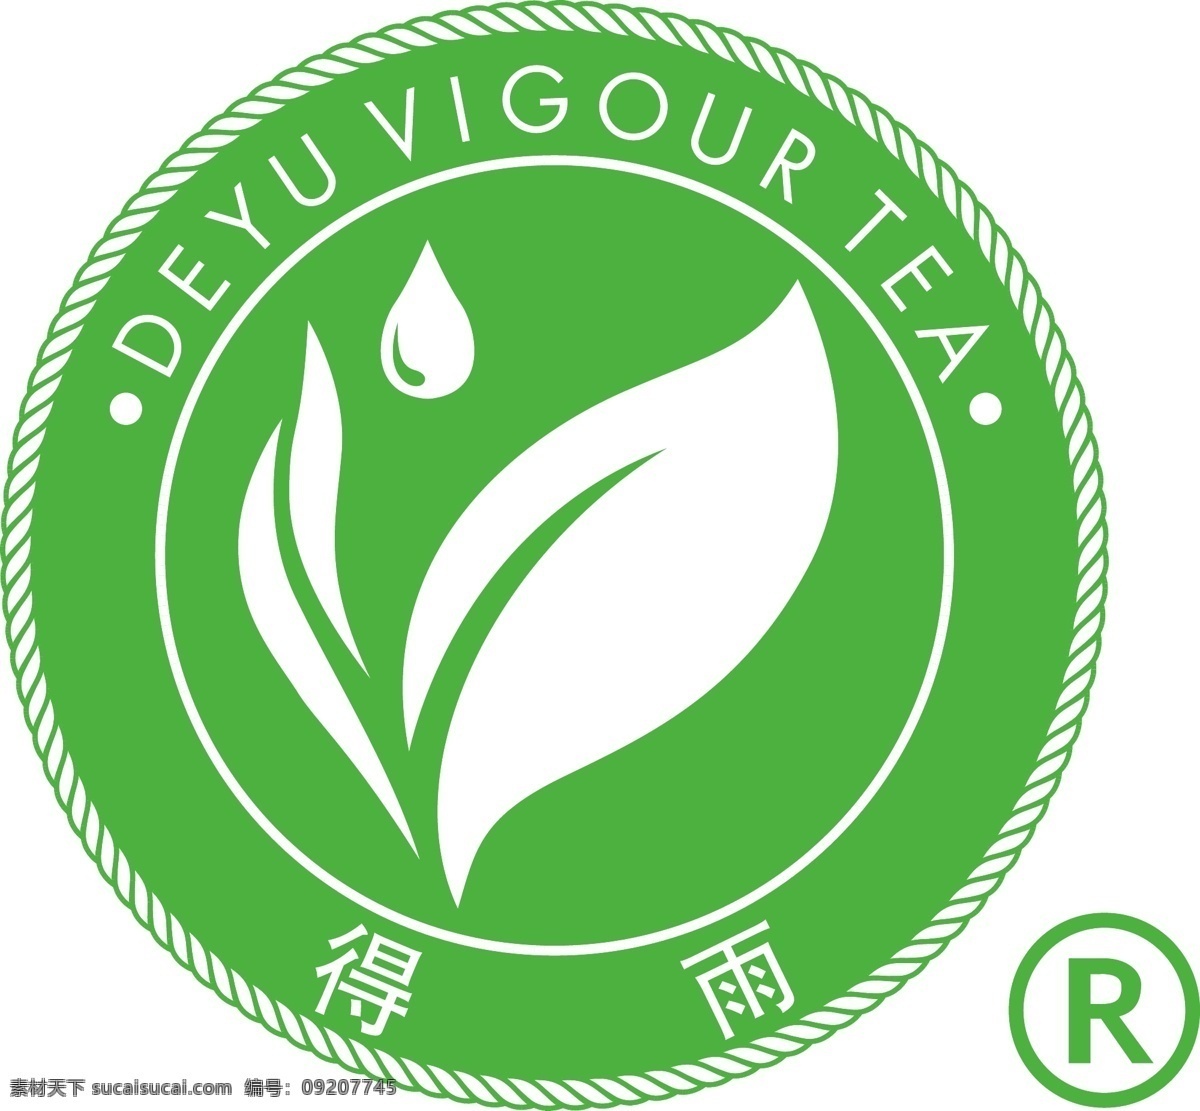 得雨活茶标志 得雨 得雨活茶 得雨活 标志 江西得雨活 deyu vigour tea 标志图标 企业 logo